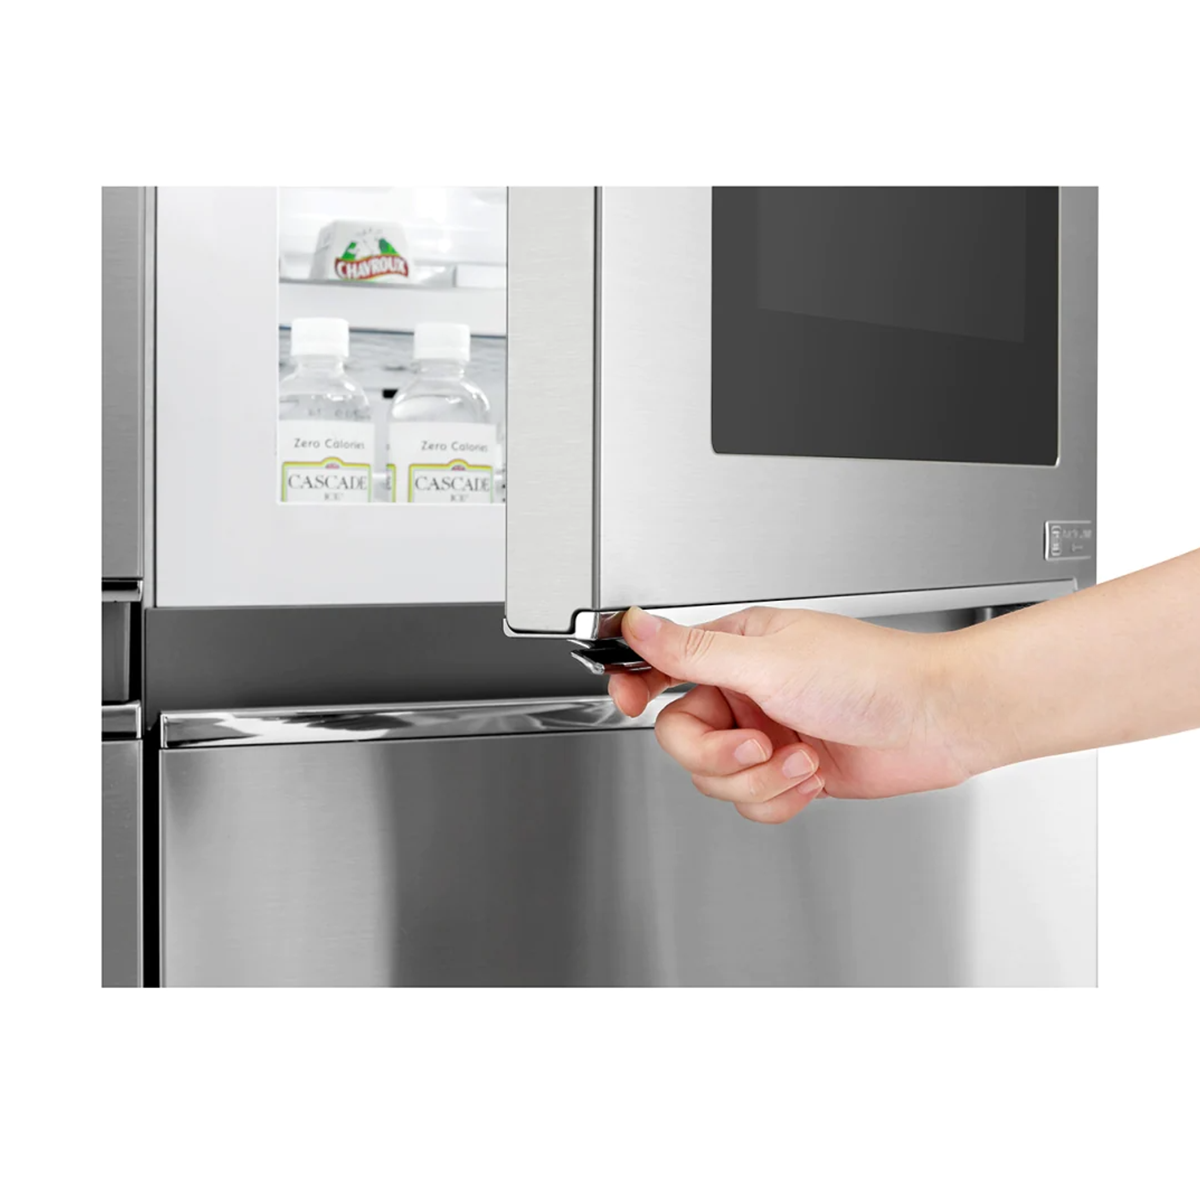 LG 687L Side-by-Side Refrigerator with Door Cooling+ Technology & InstaView Door-in-Door